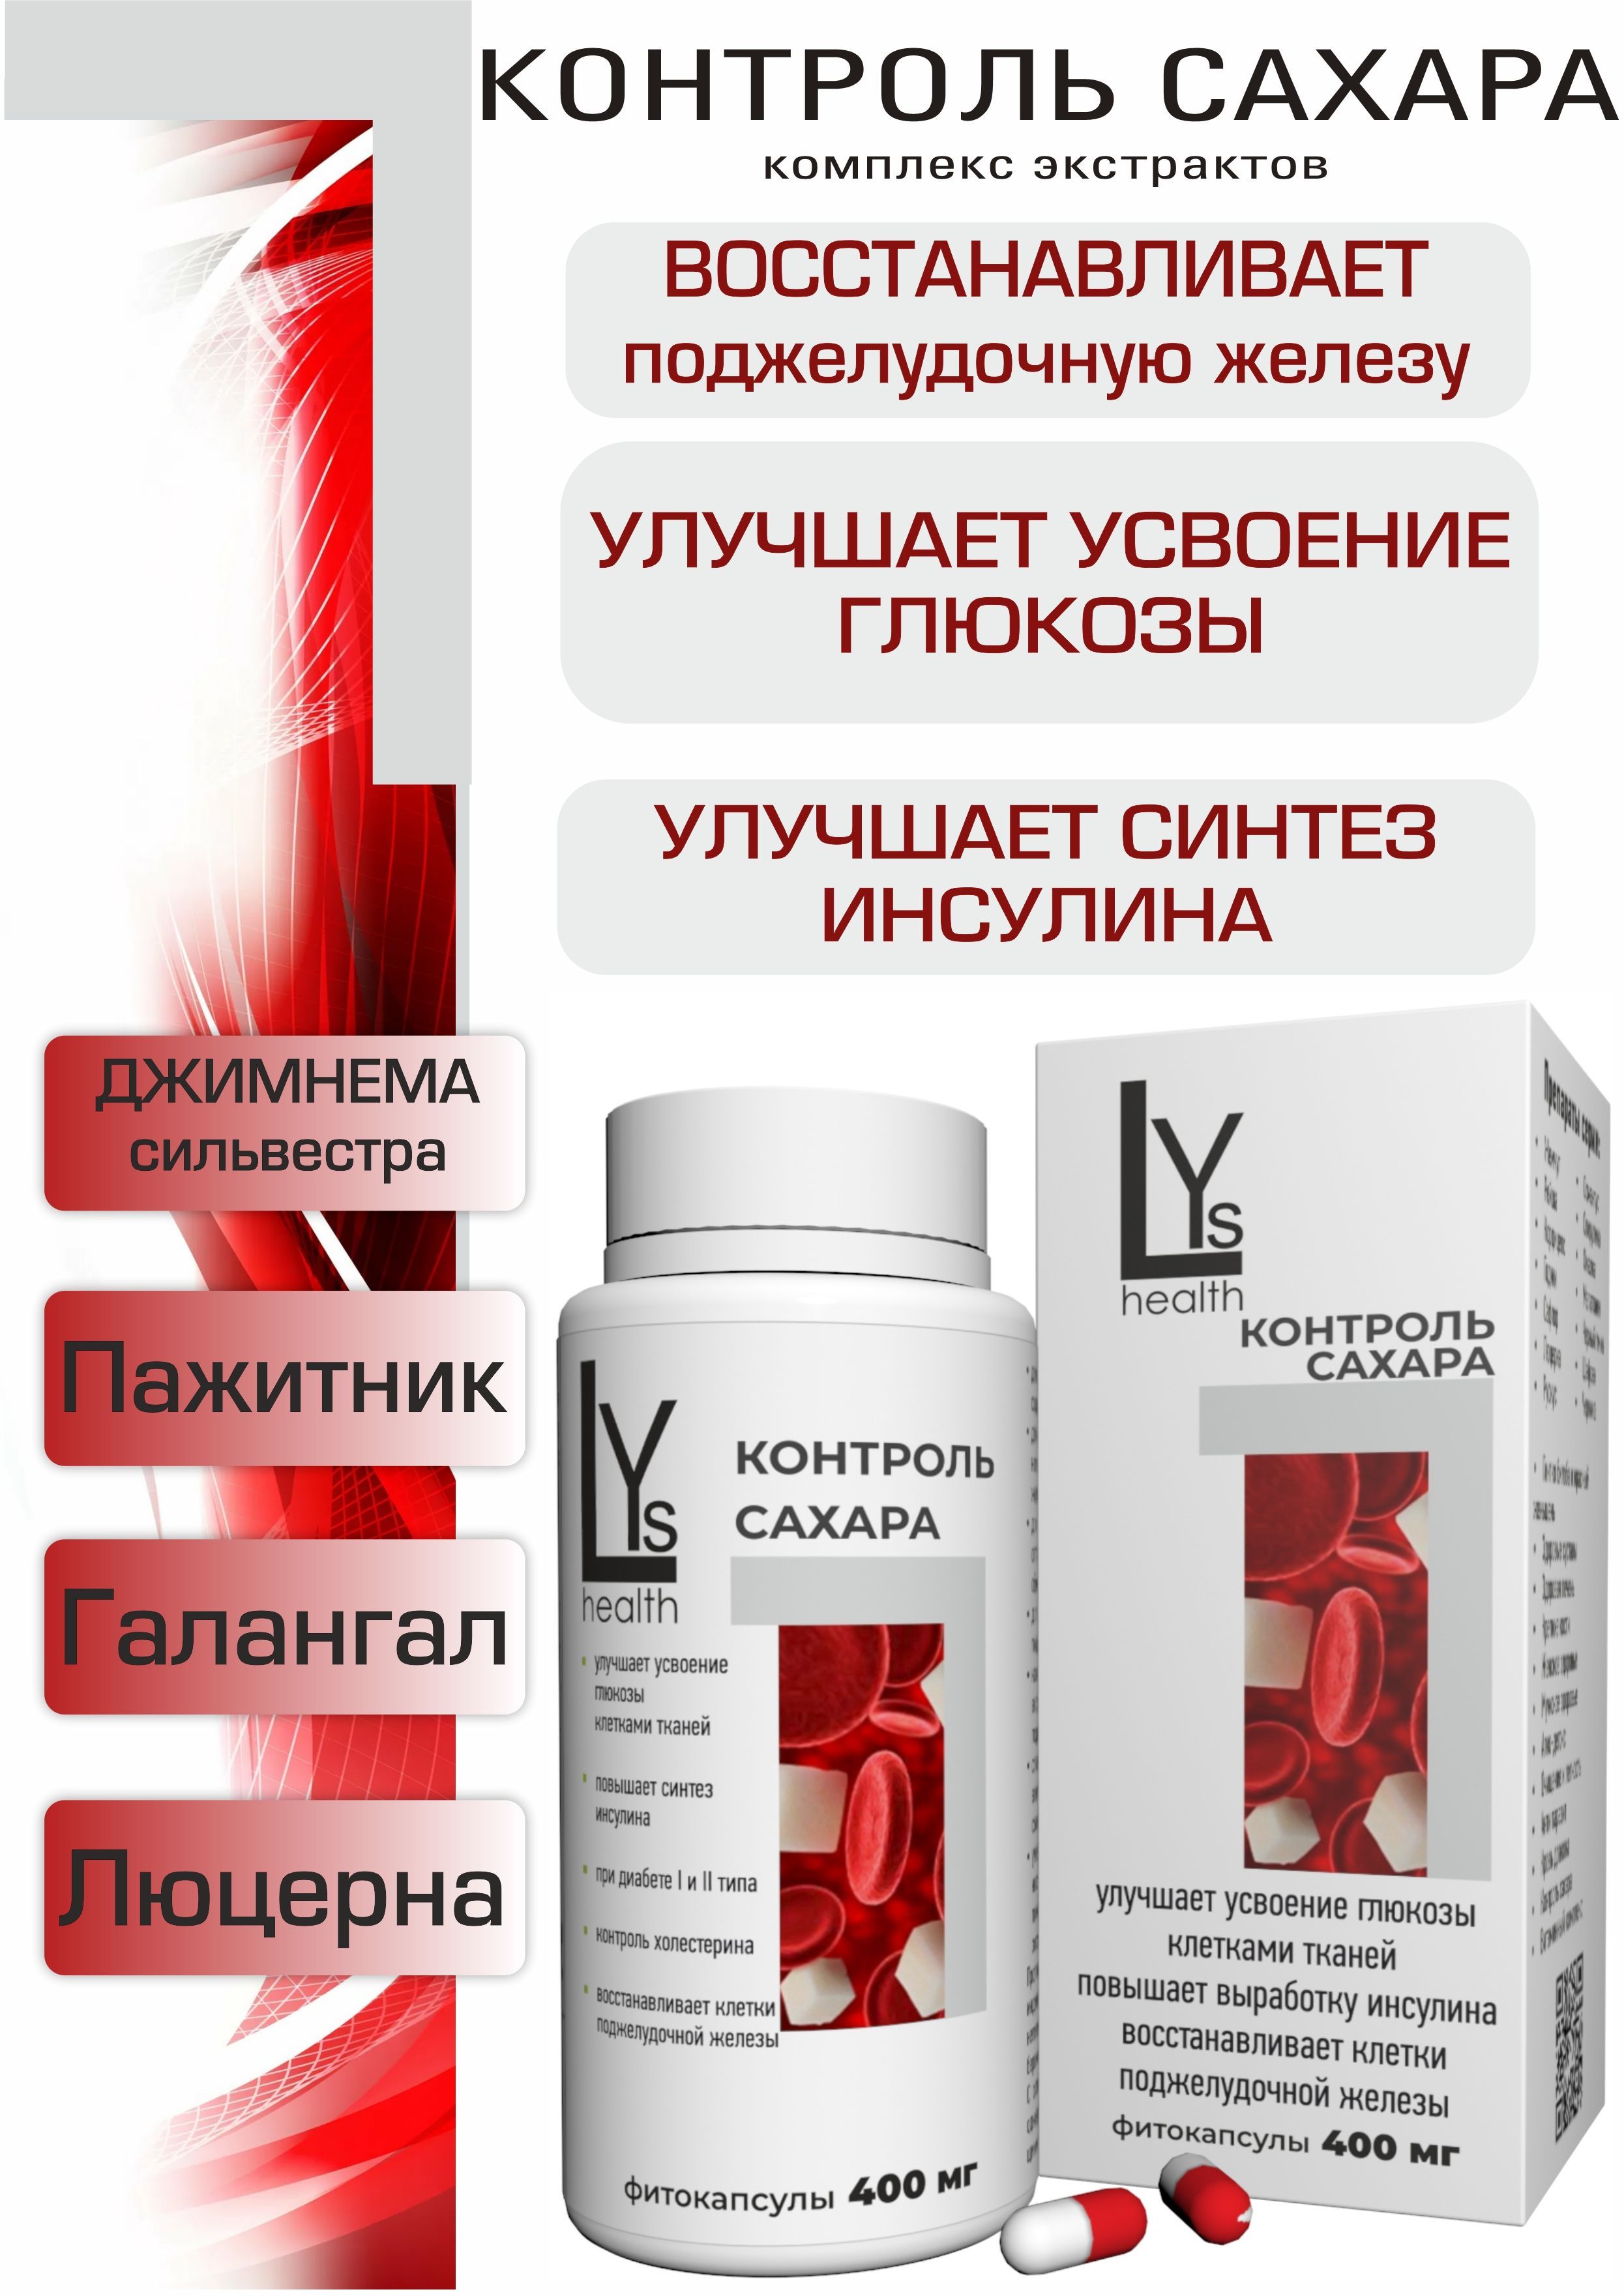 Контроль сахара, комплекс высококонцентрированных экстрактов 90 капсул (LYs Cosmetics & Health)